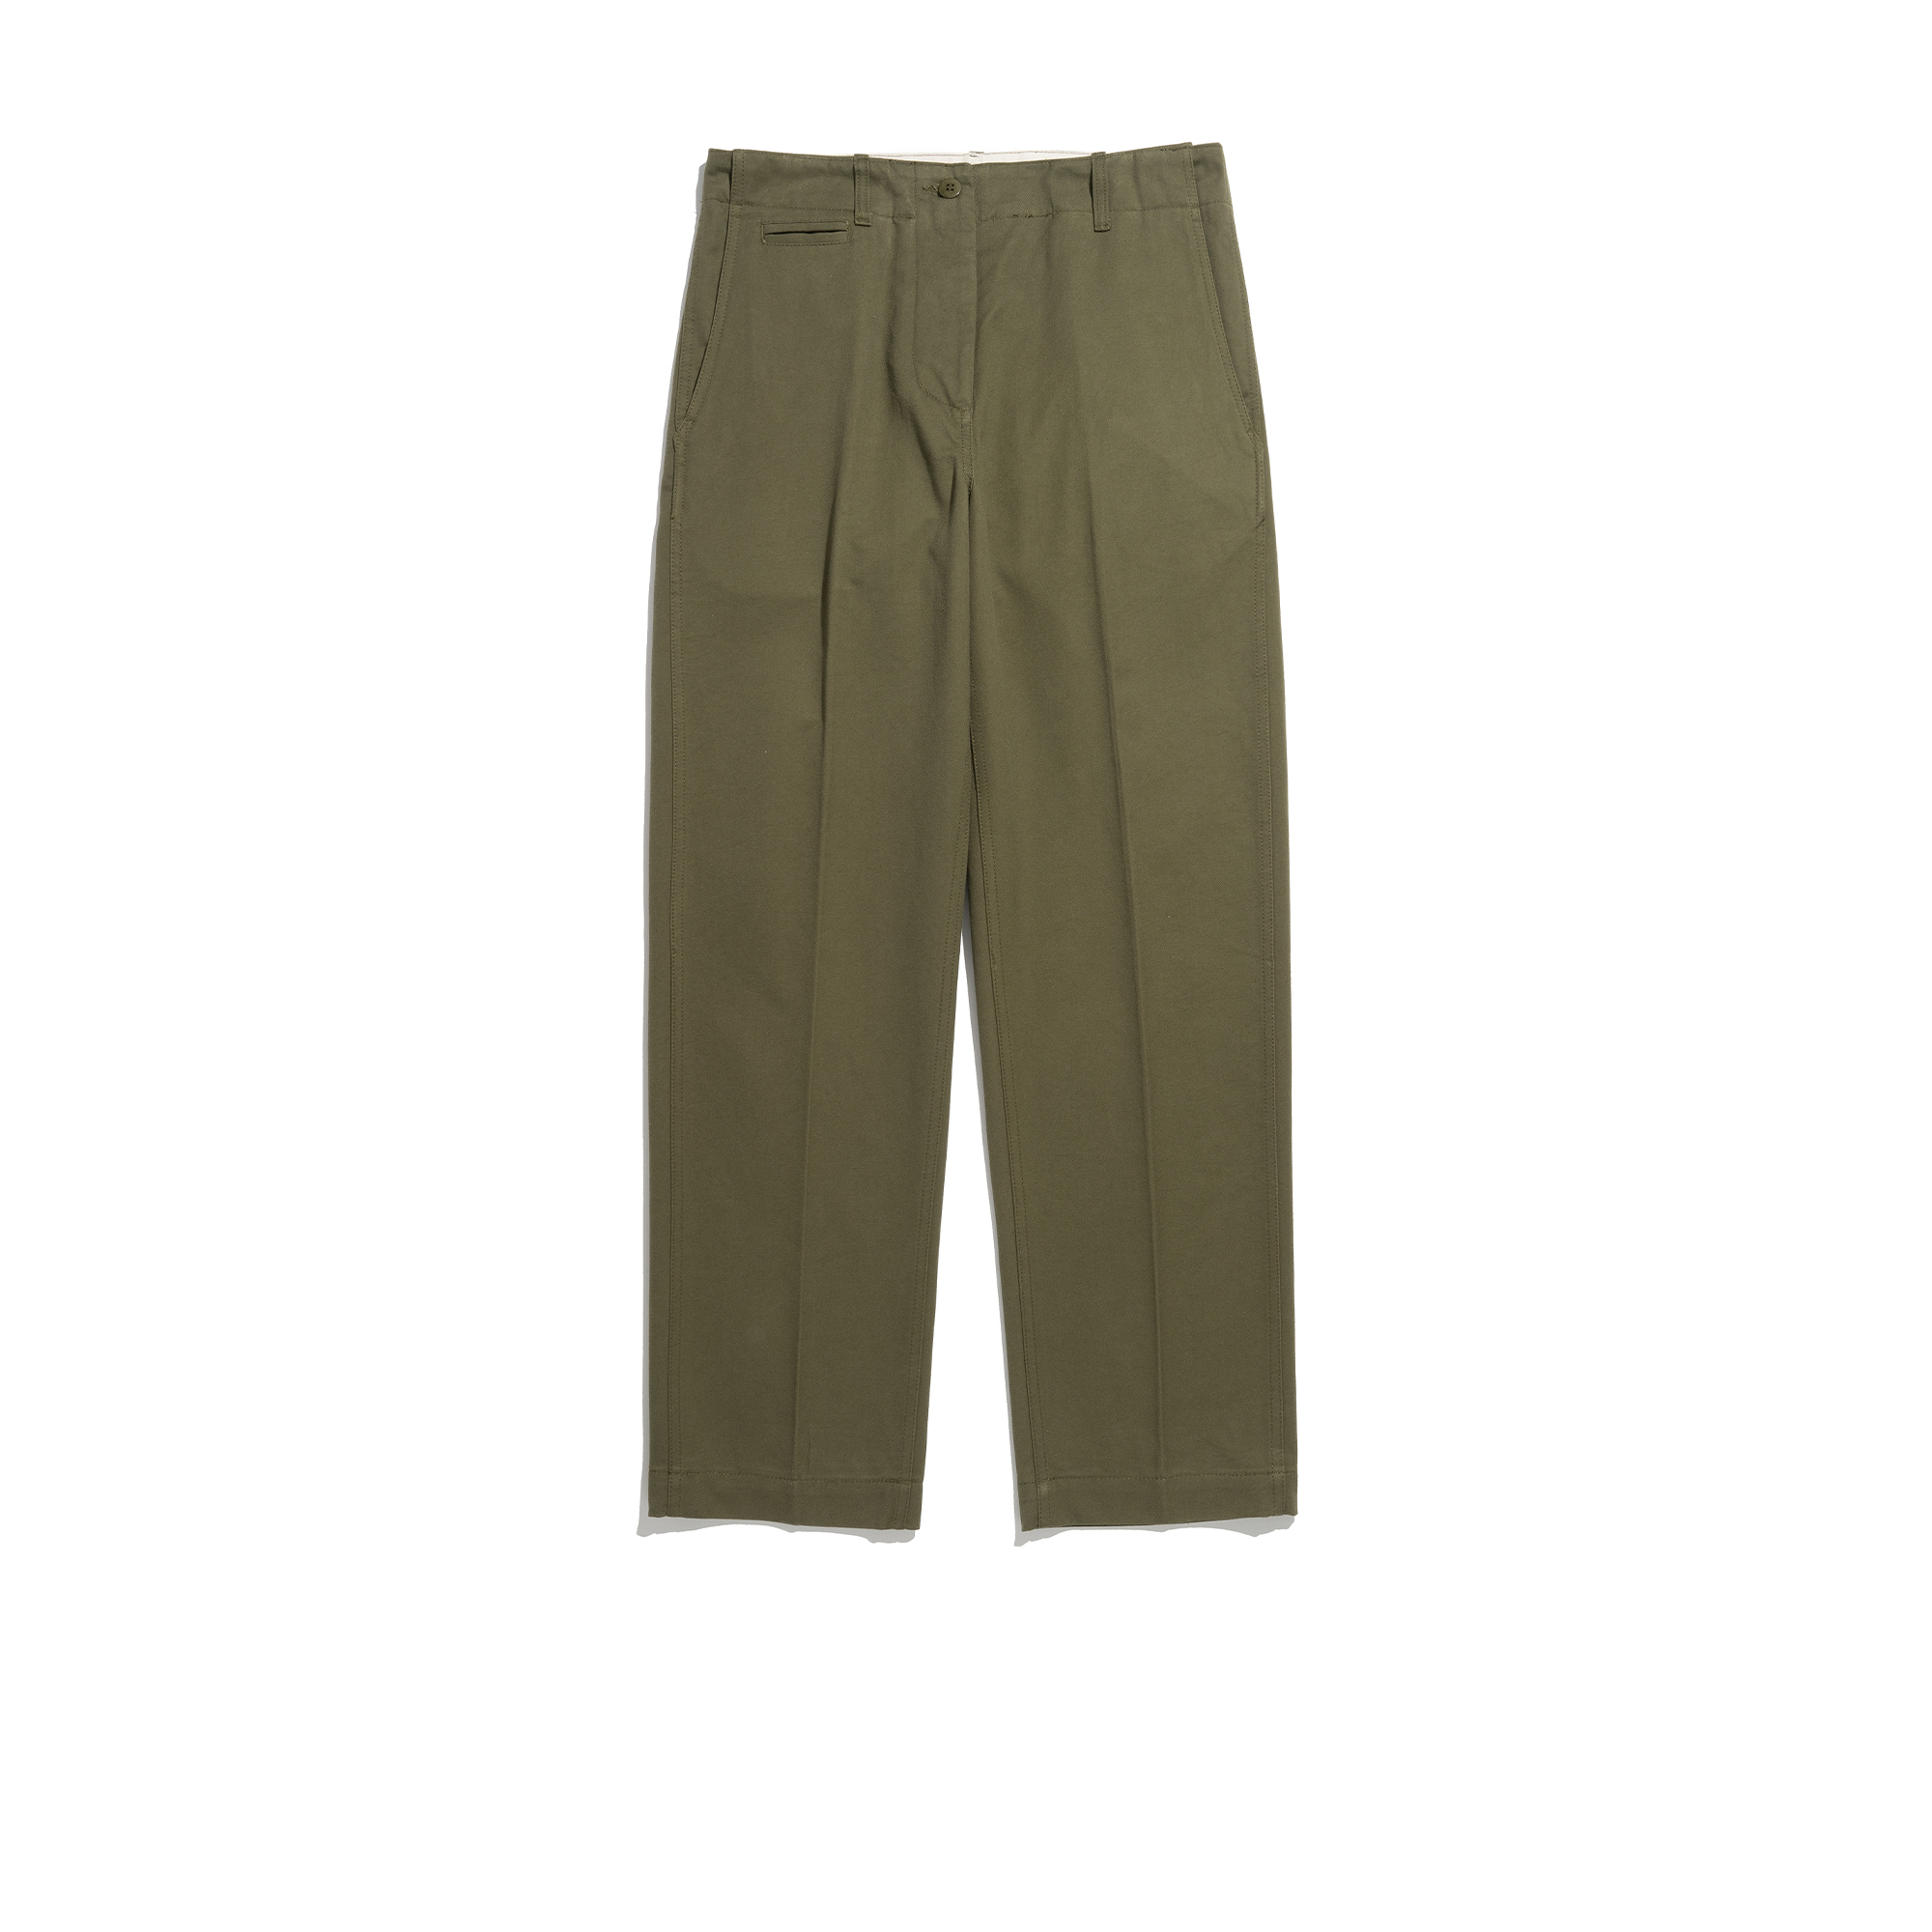 1960 US Army Officer Chino Pants [Khaki]리넥츠